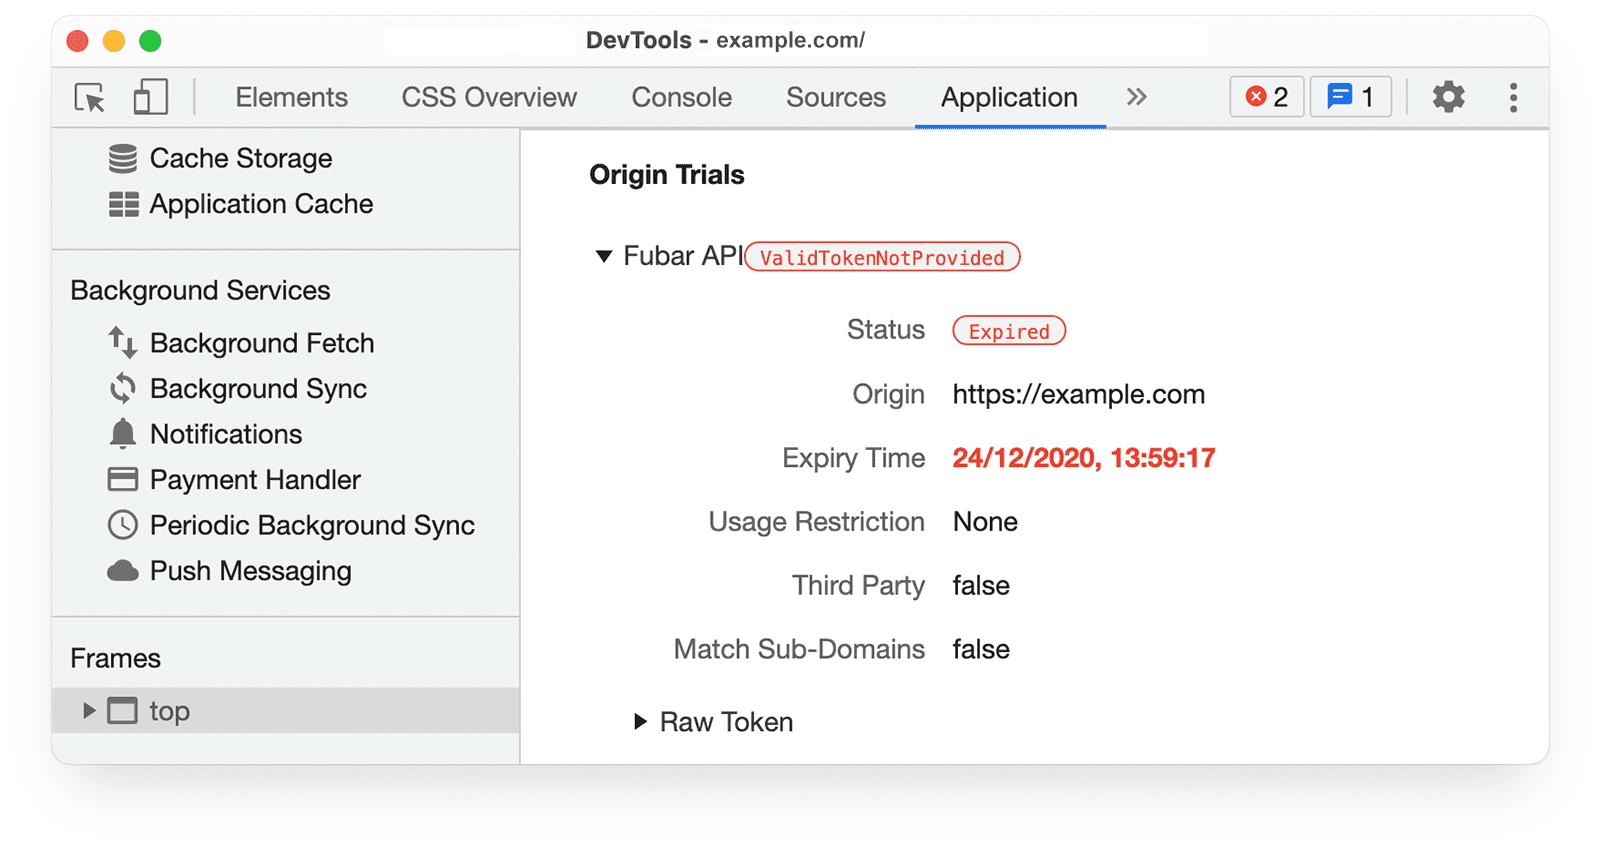 ข้อมูลการทดลองใช้ต้นทางของ Chrome DevTools ในแผงแอปพลิเคชัน โดยไฮไลต์สถานะ: Success